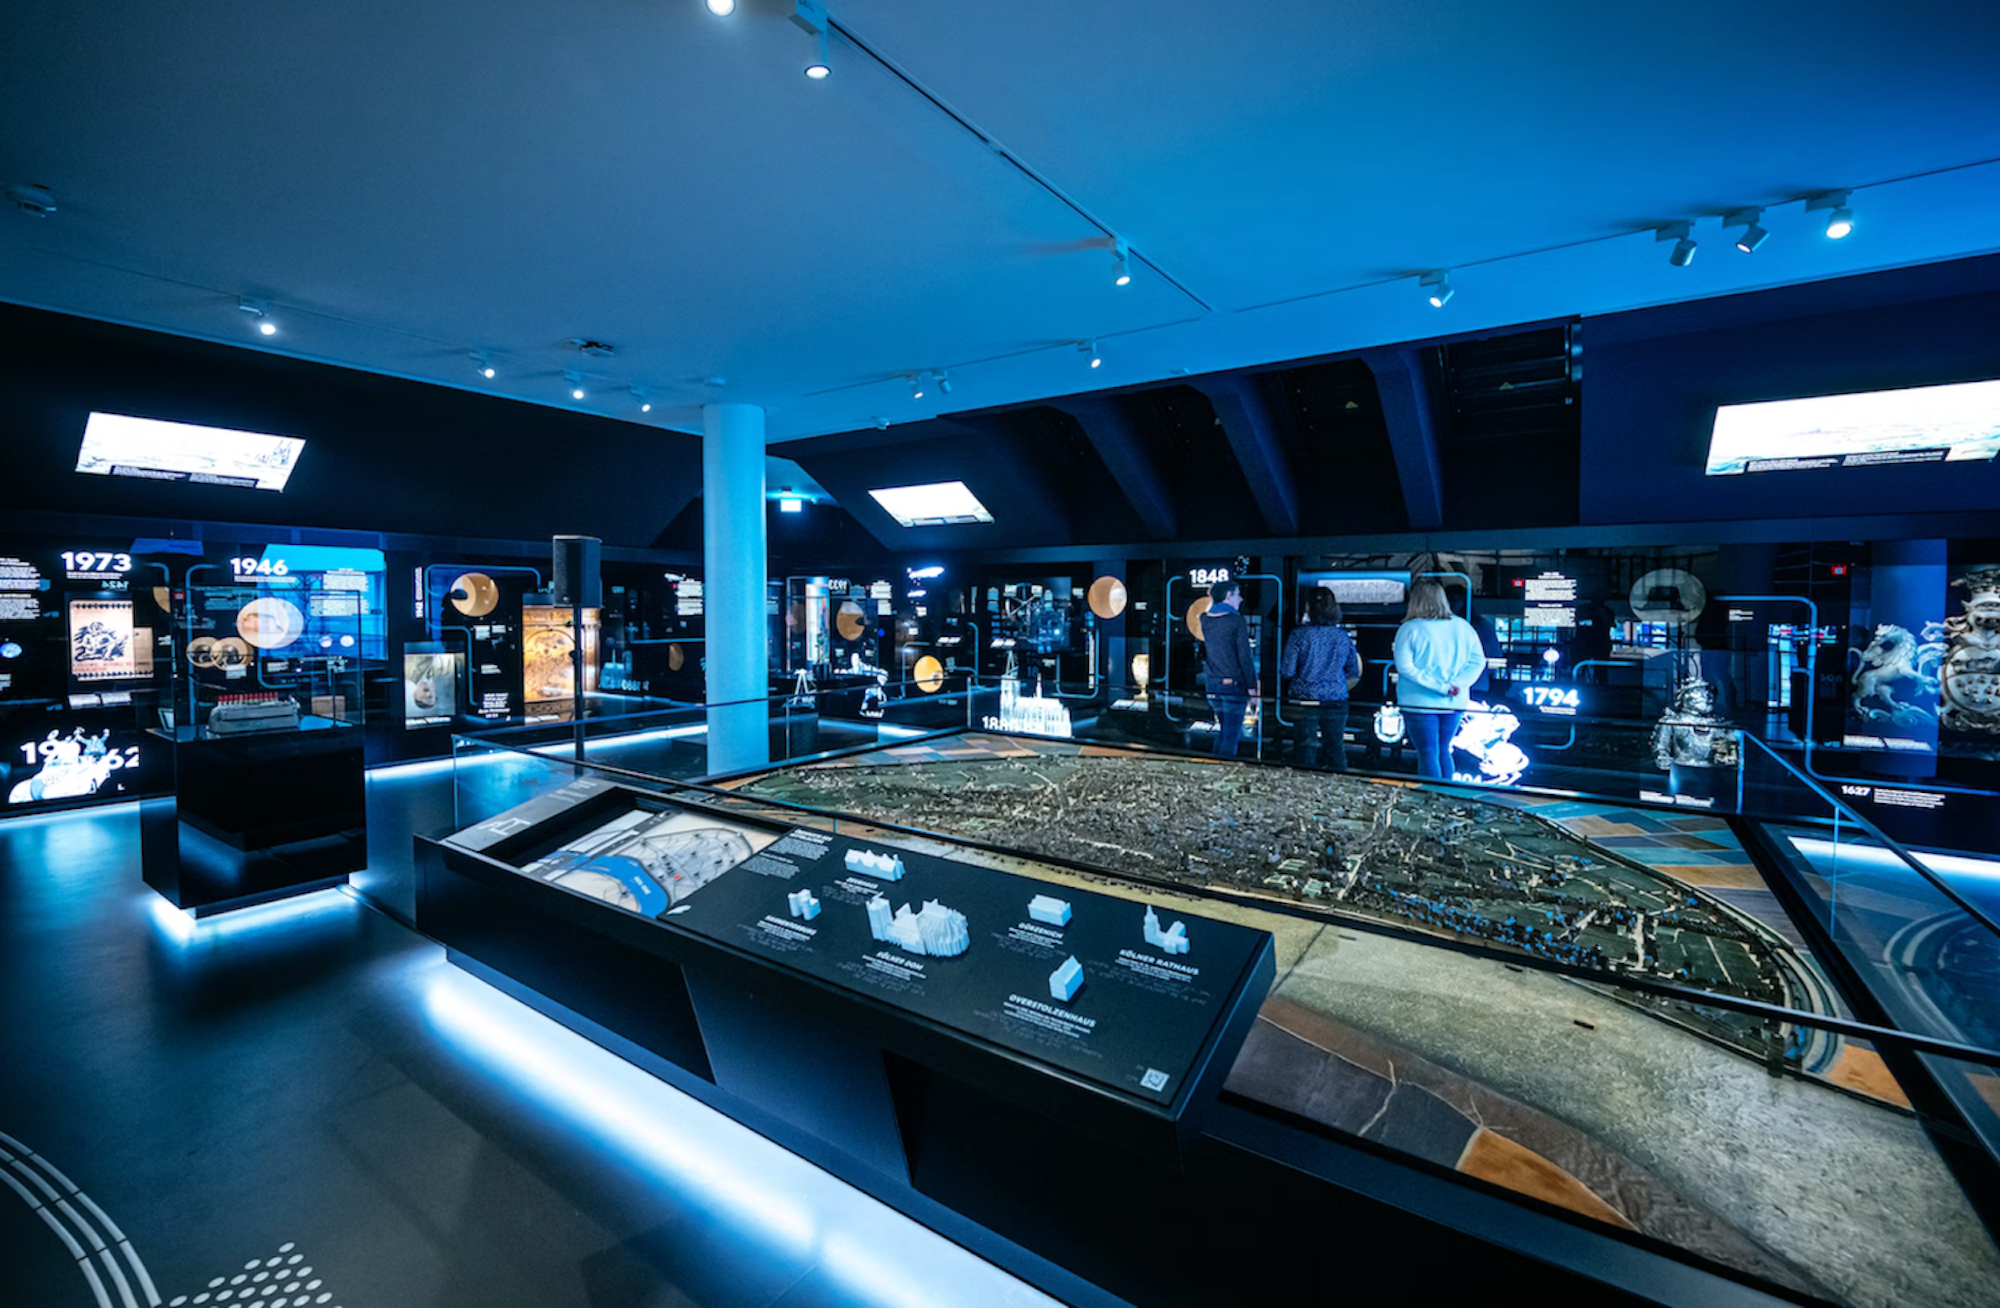 Der Raum der Stadtgeschichte mit dem chronologischen Zeitstrahl ist ein Highlight im Kölnischen Stadtmuseum.